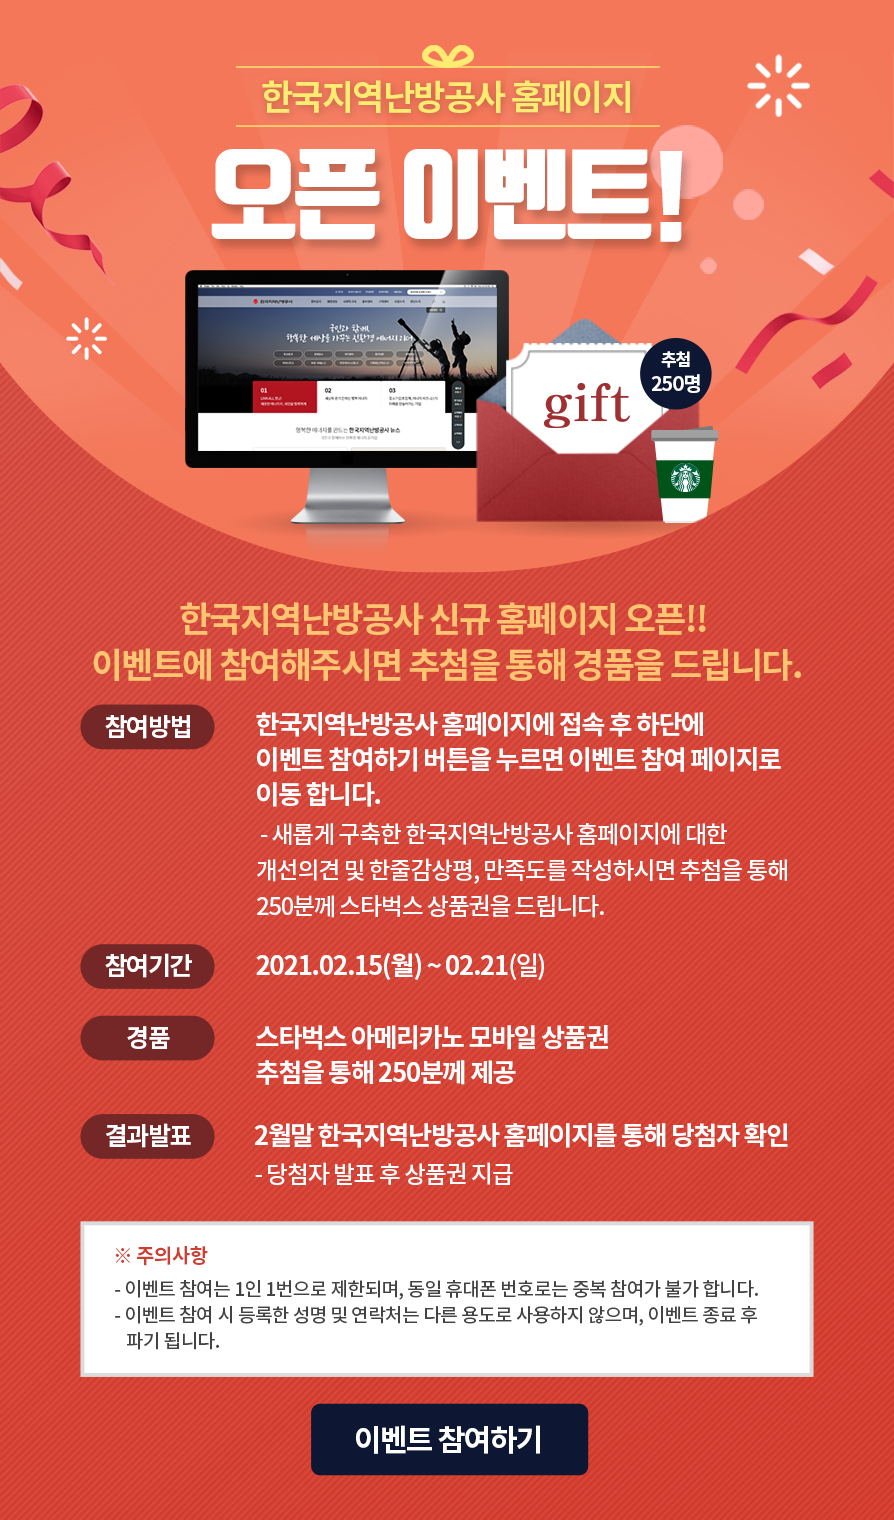 한국지역난방공사 홈페이지 오픈 이벤트 참여하기